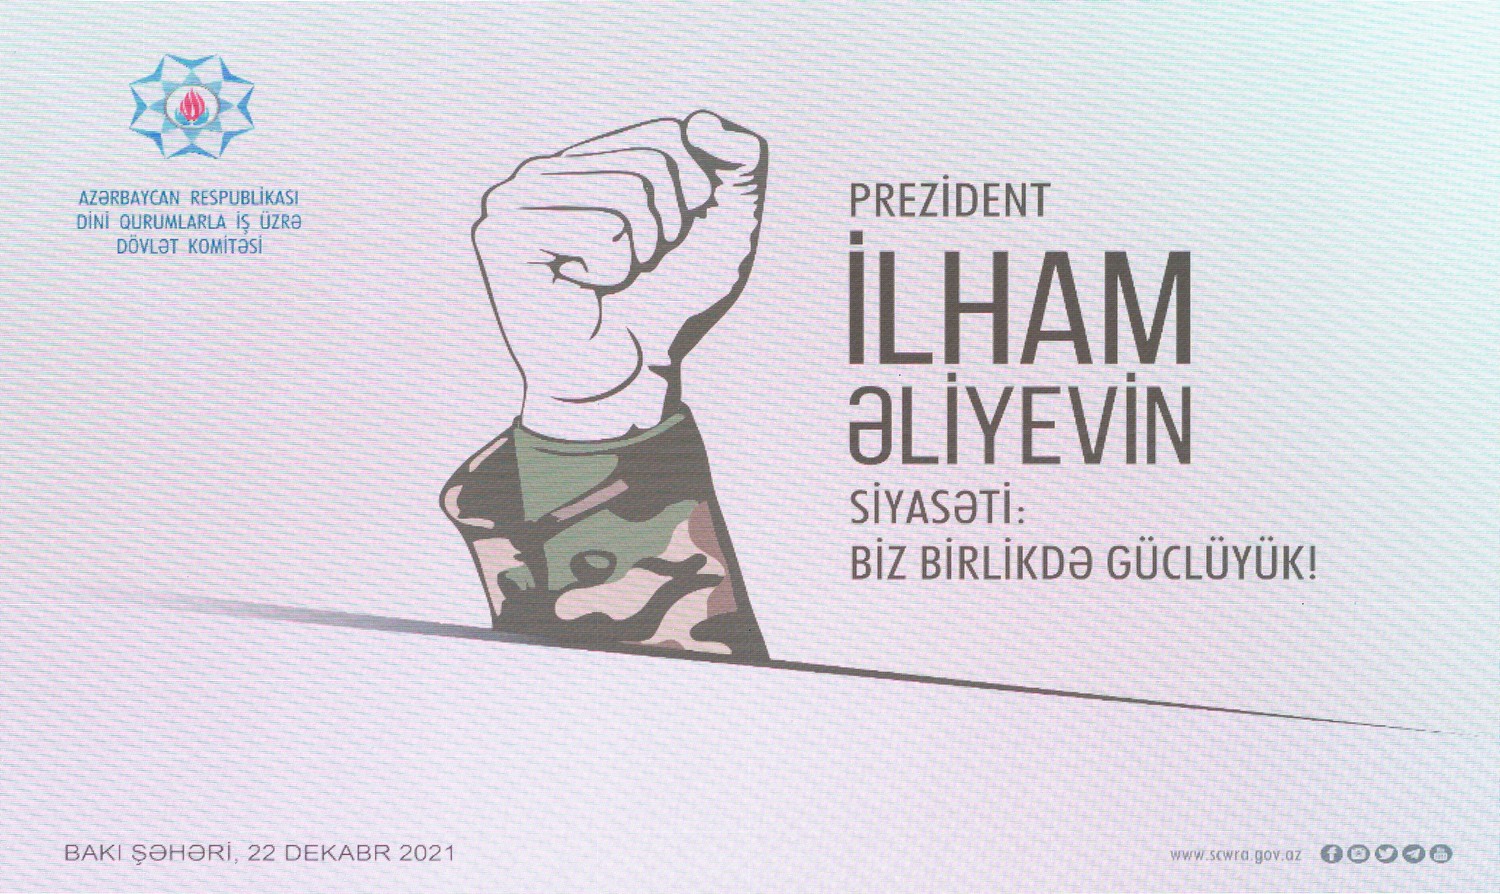 Bakıda "Prezident İlham Əliyevin Siyasəti: Biz birlikdə güclüyük" mövzusunda konfrans keçirilib.